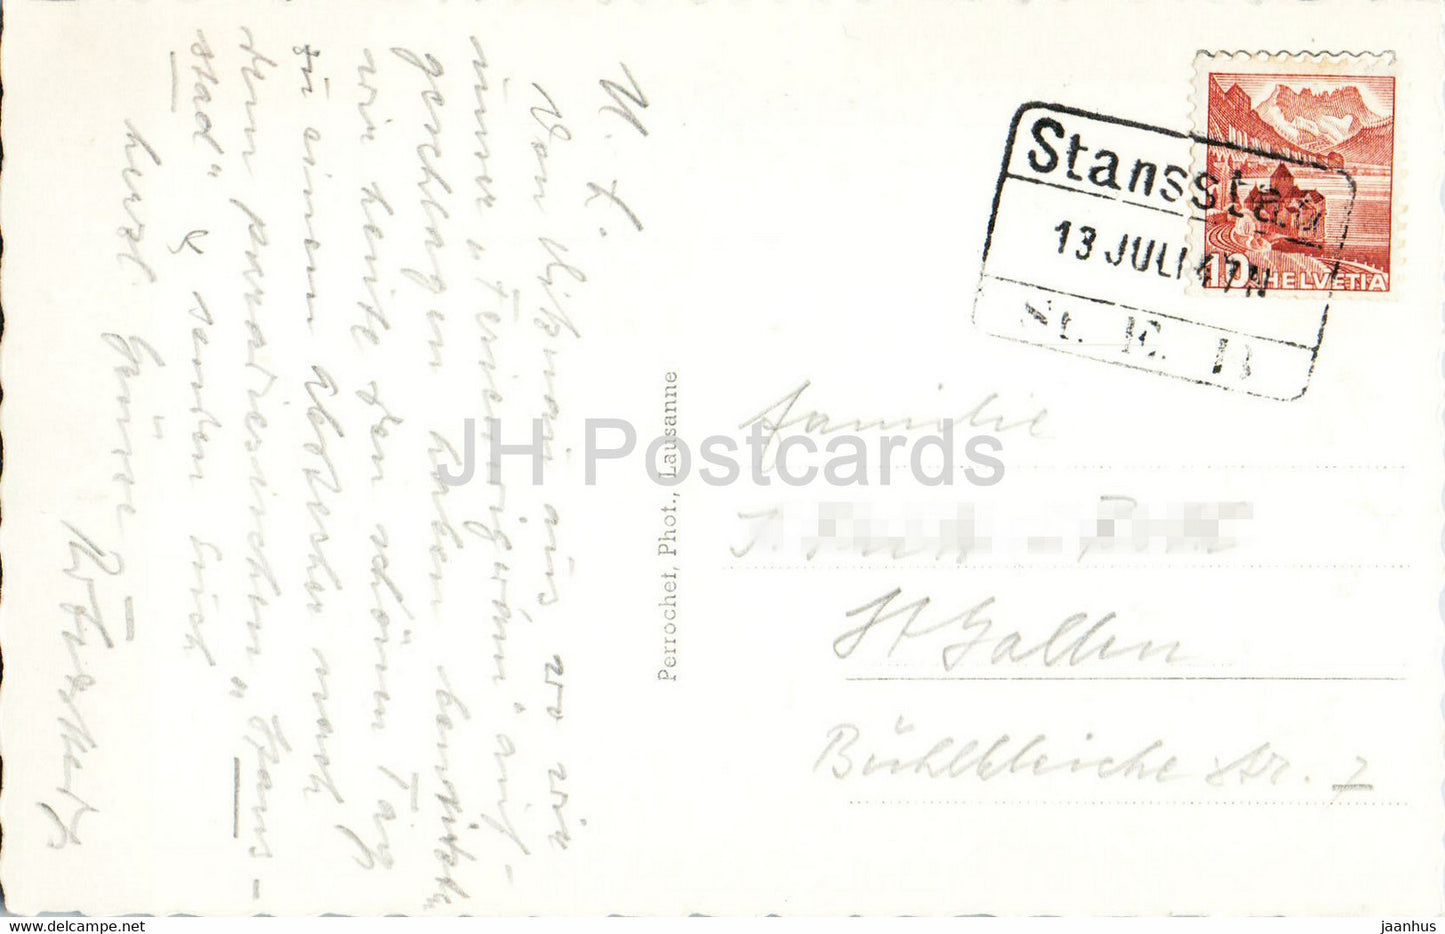 Stimmung mit Stanserhorn - Rugenstock u Pilatus - 8916 - 1947 - old postcard - Switzerland - used